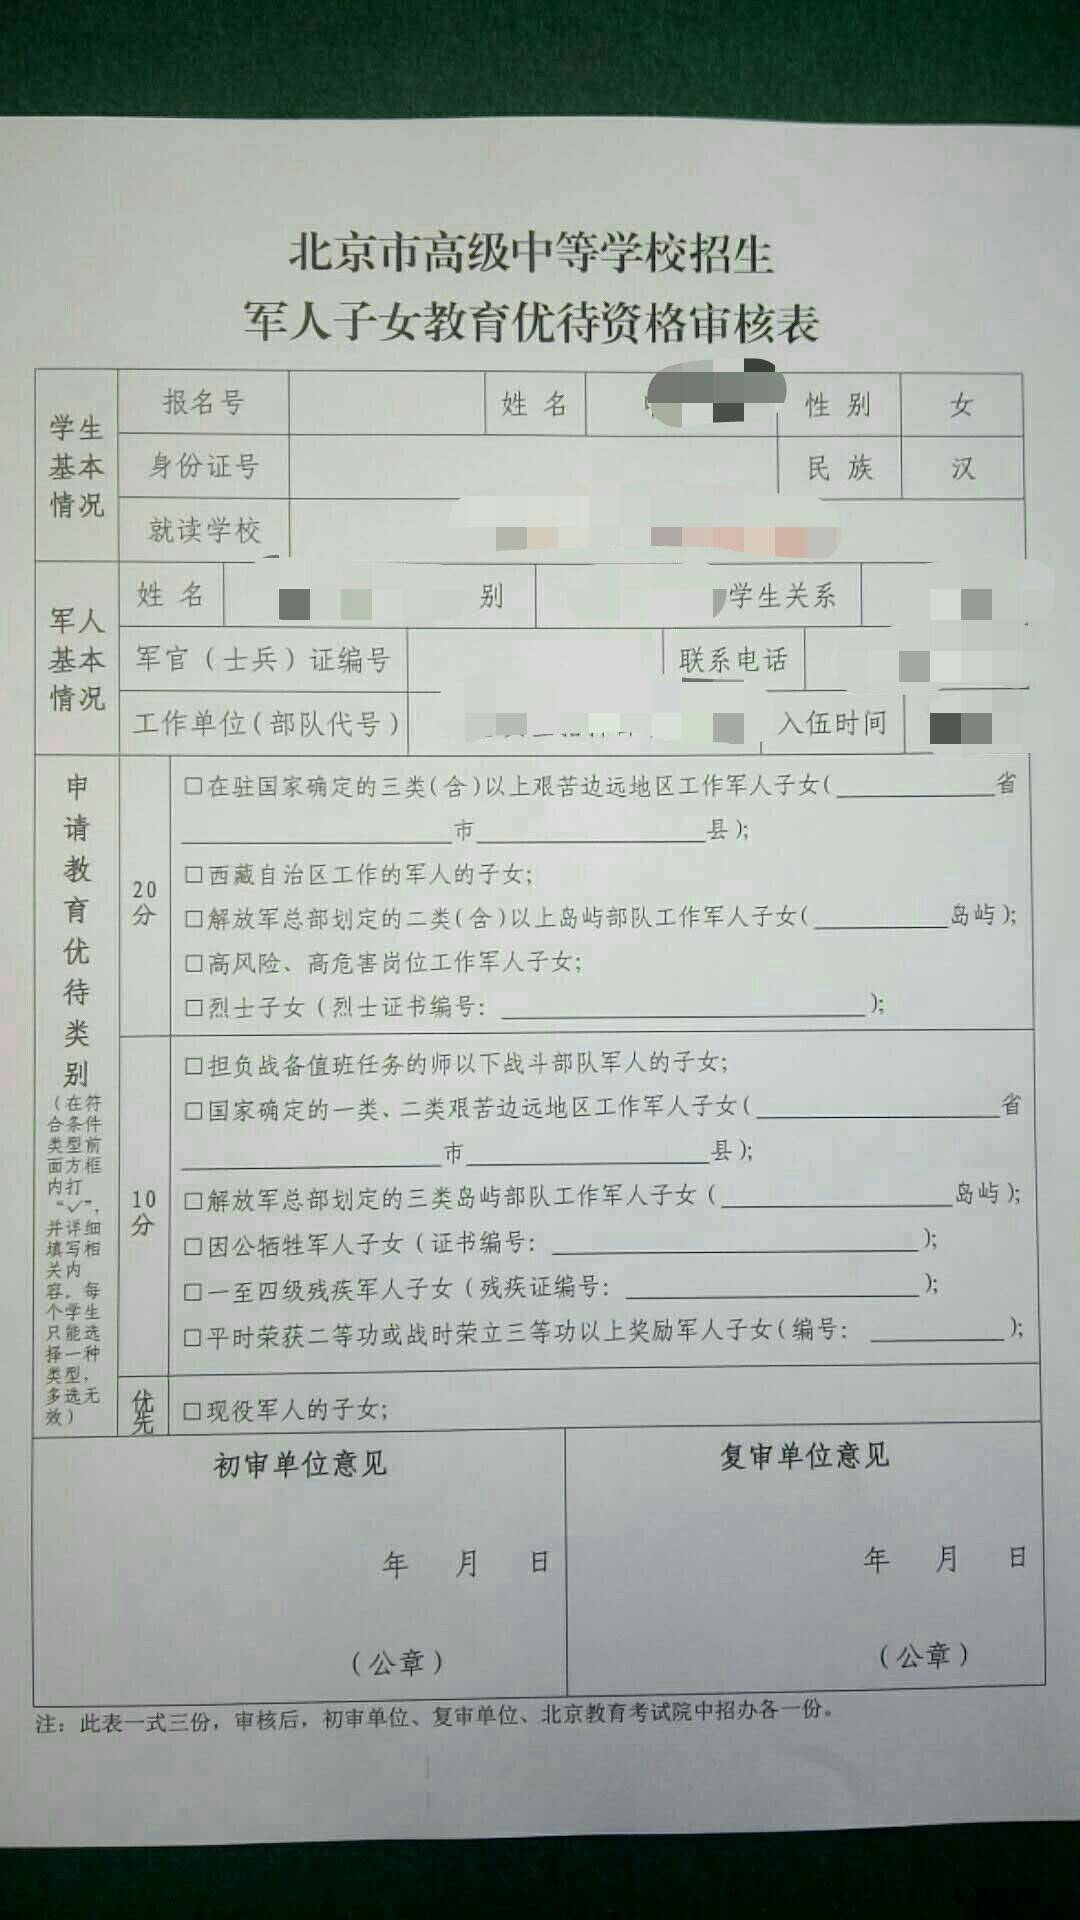 现役军人子女中考加分申请表北京中考加分条件